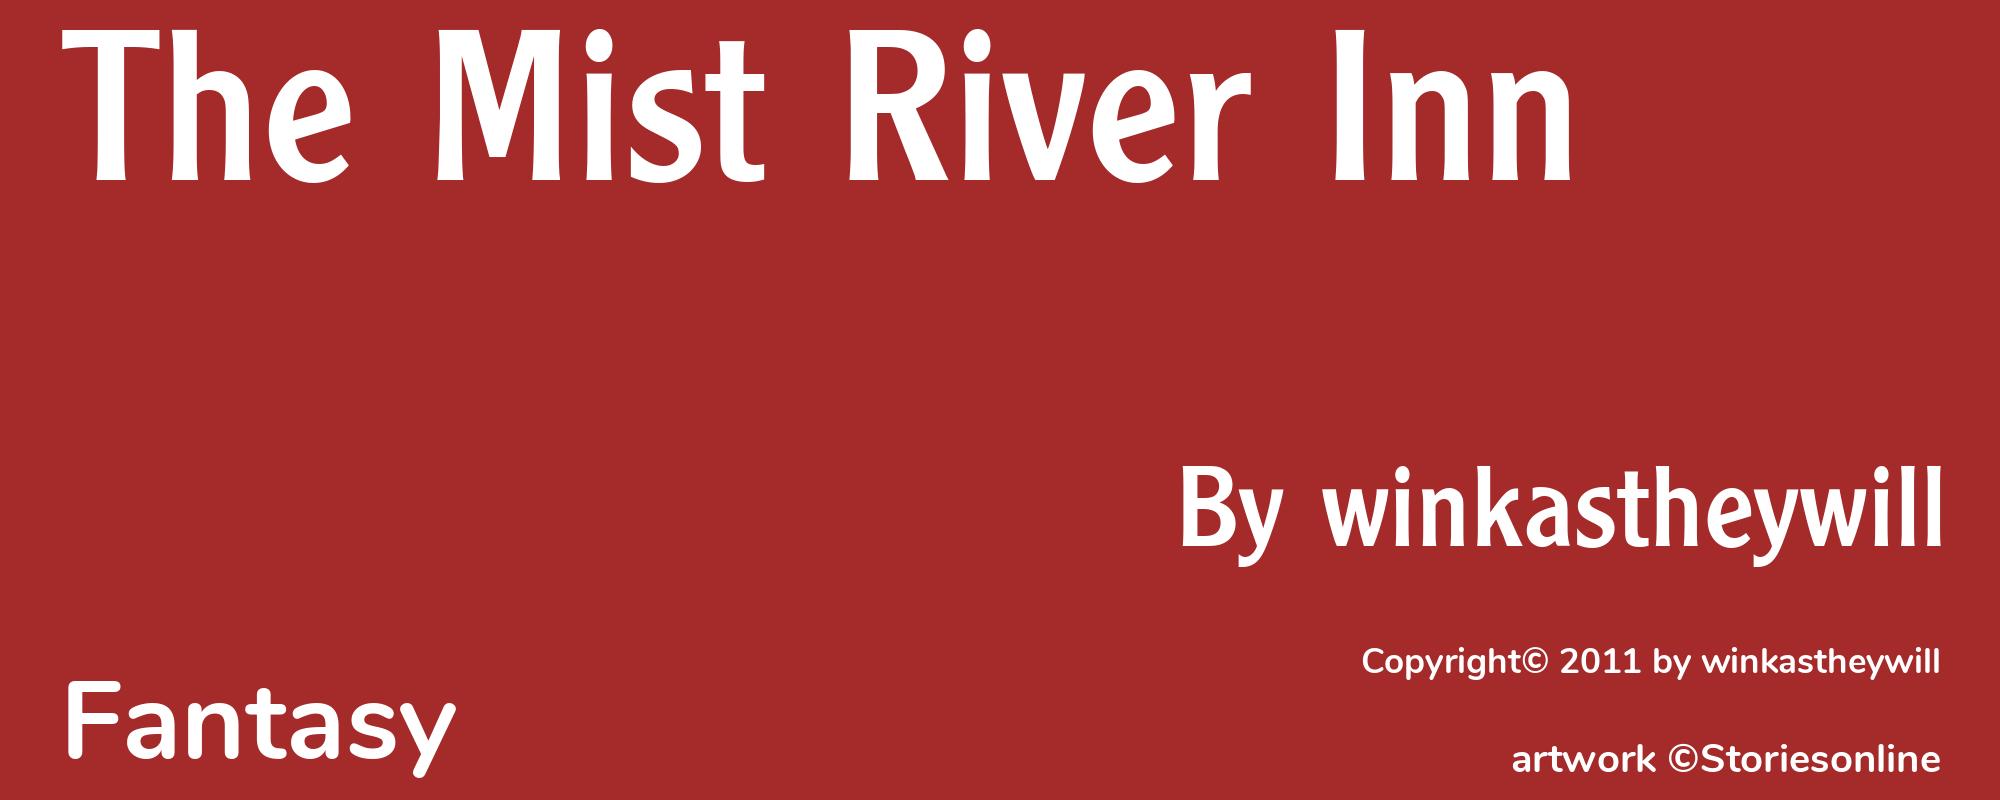 The Mist River Inn - Cover